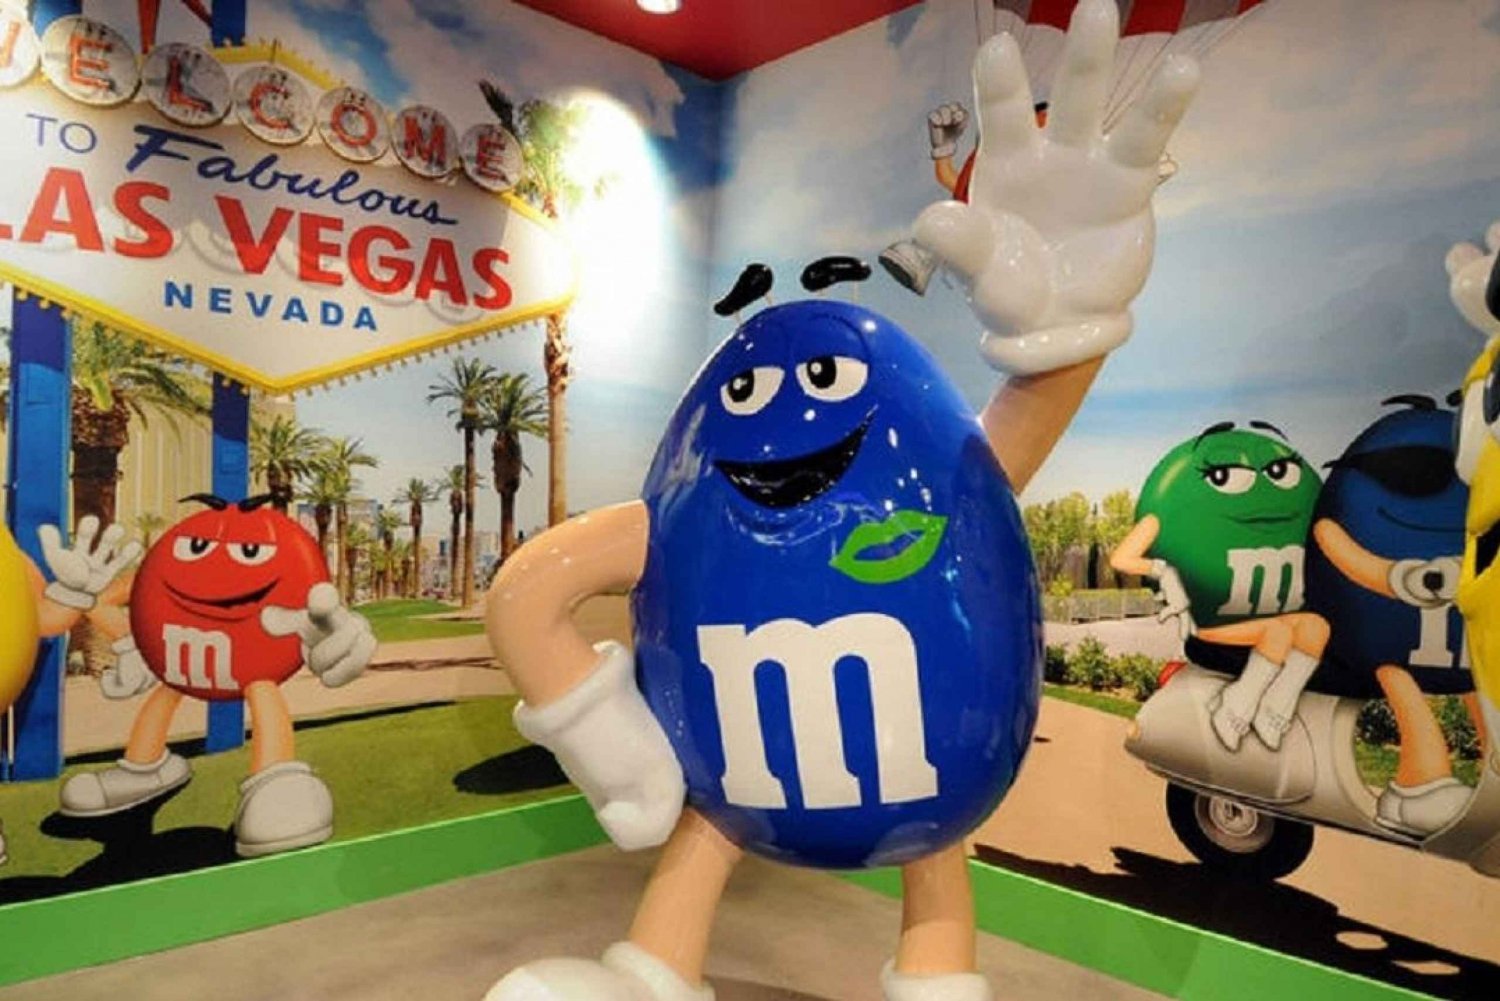 Vegas: Schokolade probieren, erforschen und einkaufen